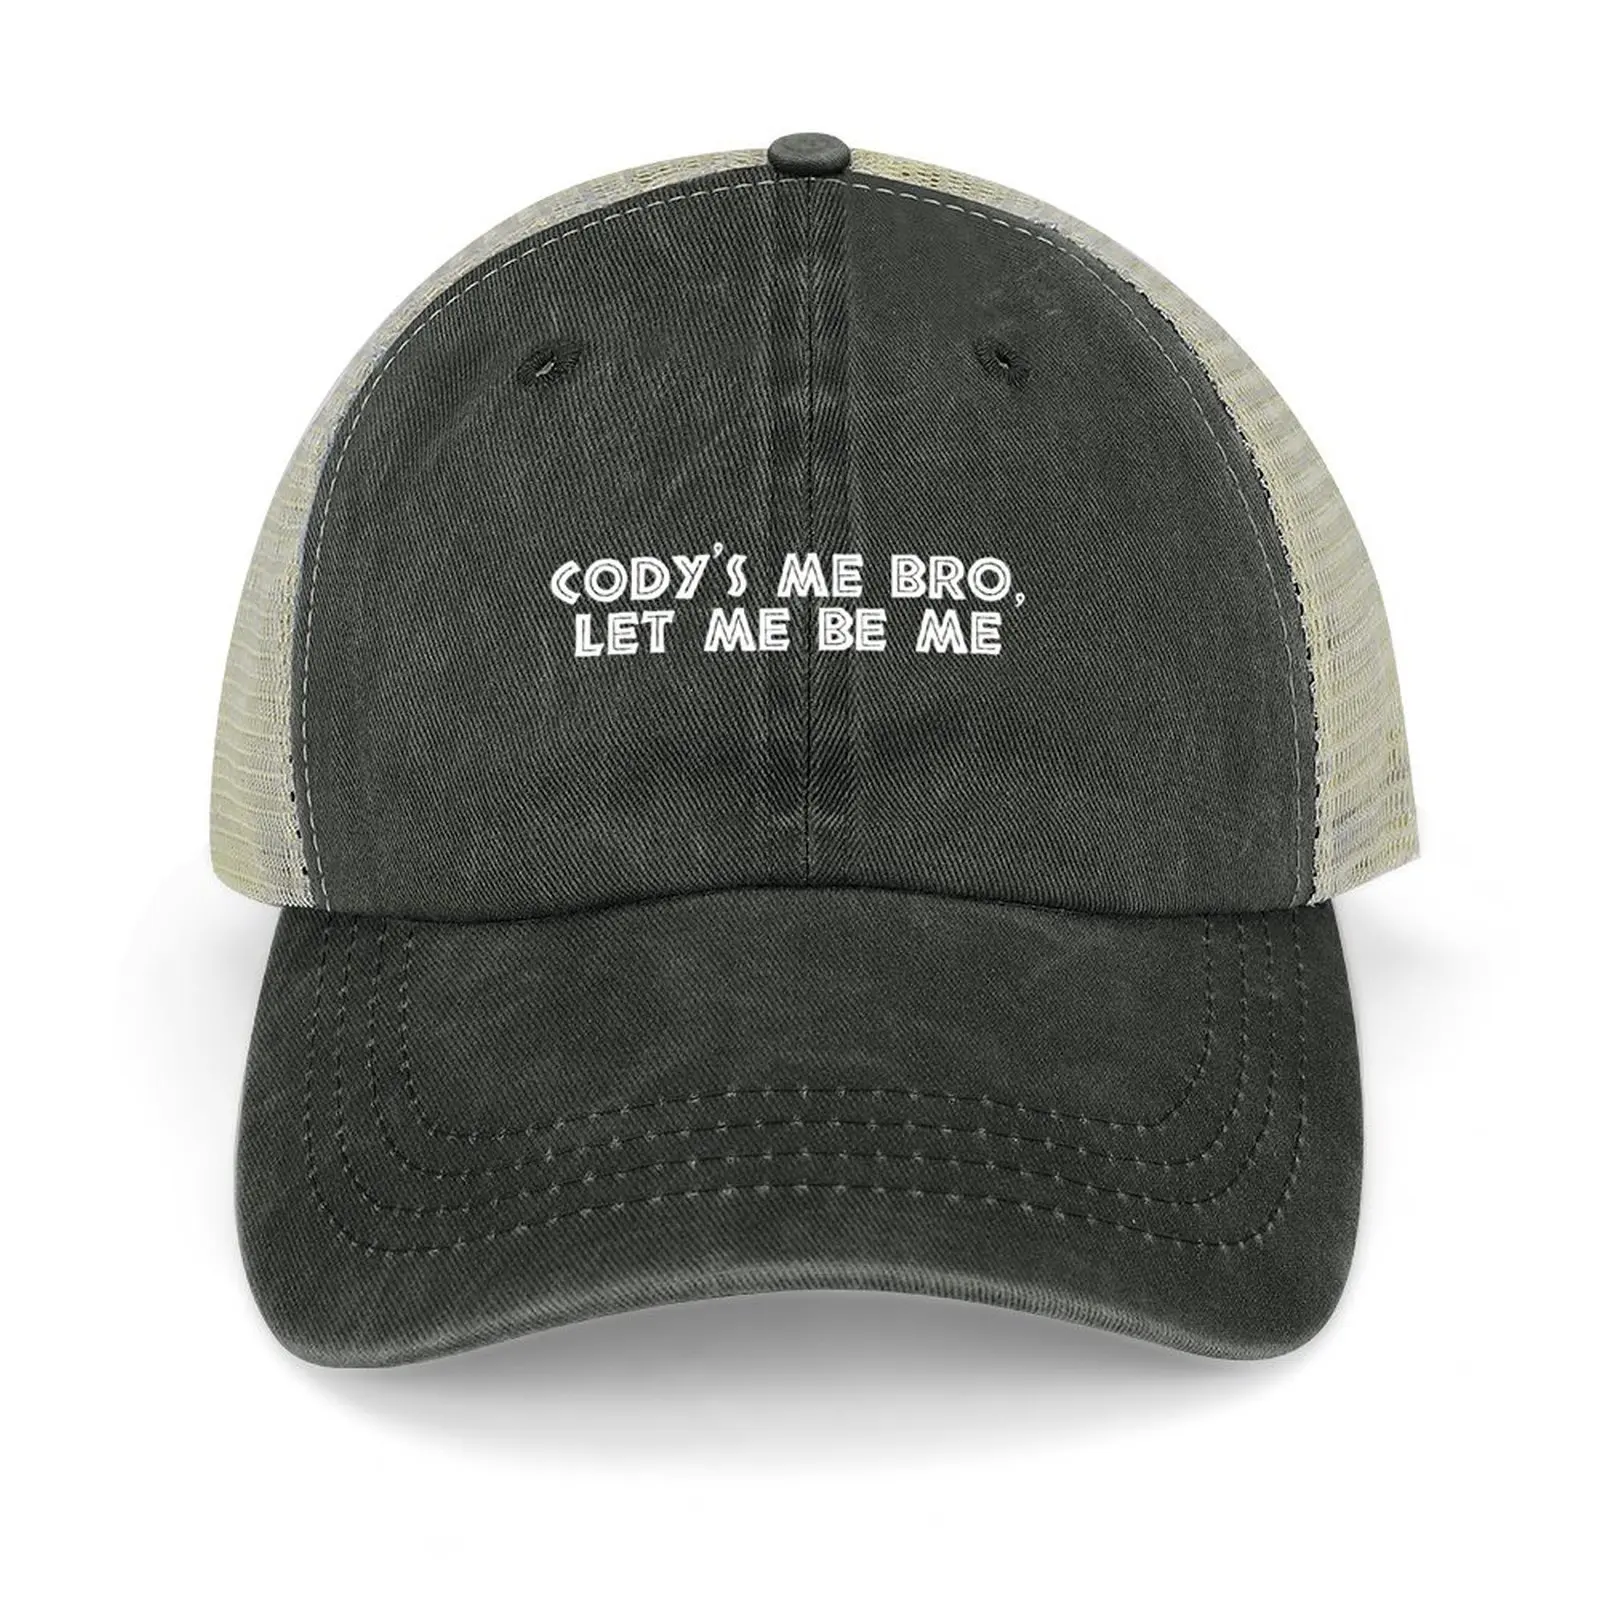 

Cody's me bro, let me be me Cowboy Hat Streetwear Icon Hood Golf Cap Female Men's